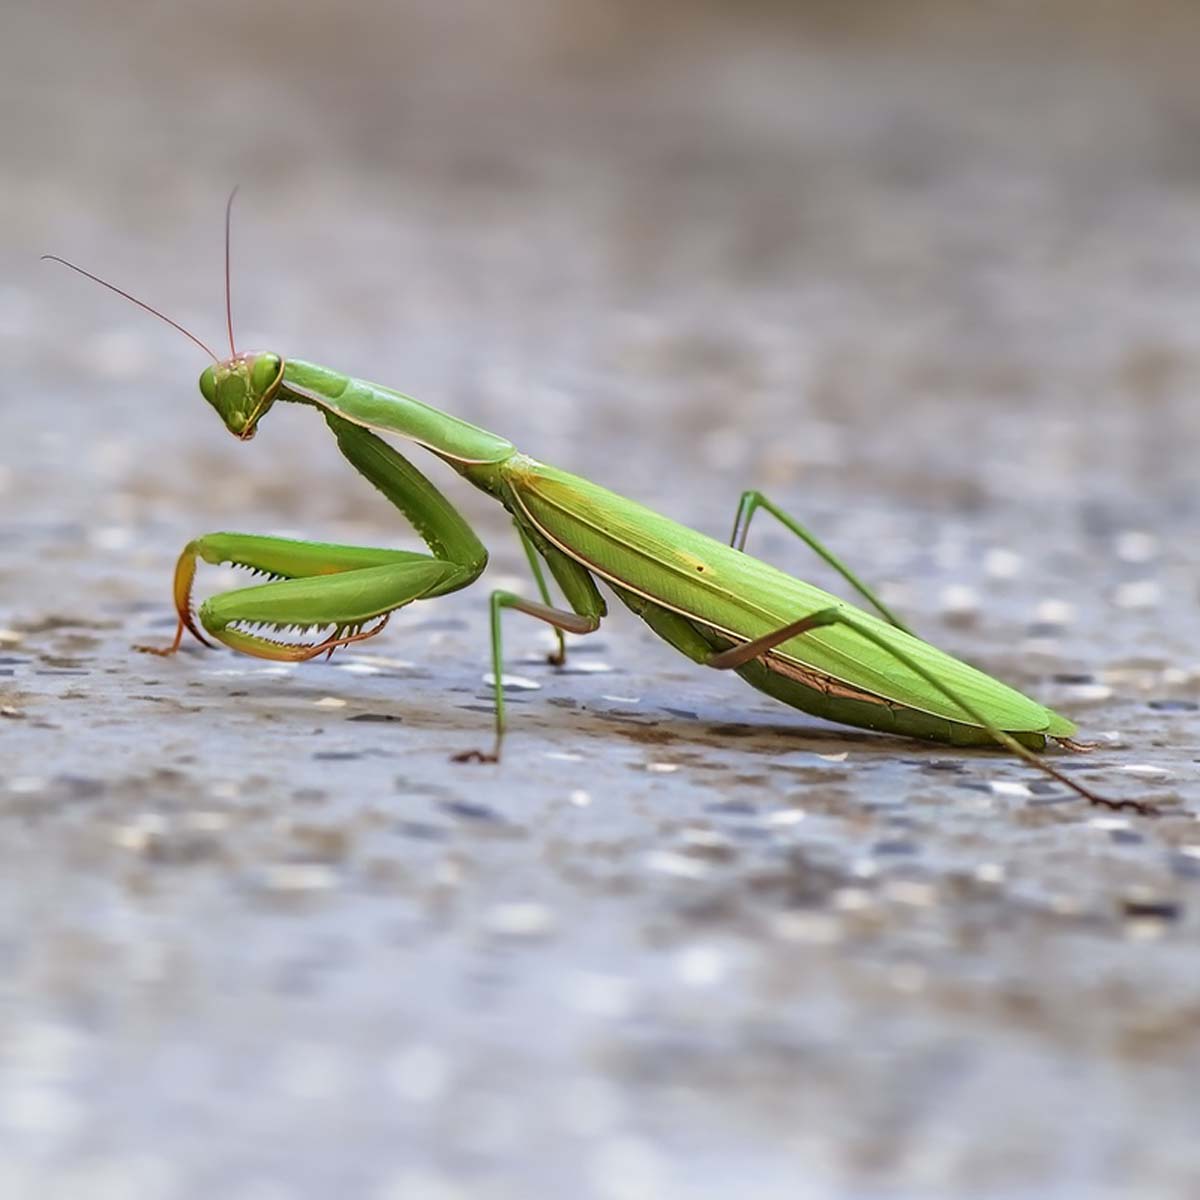 A green praying mantis